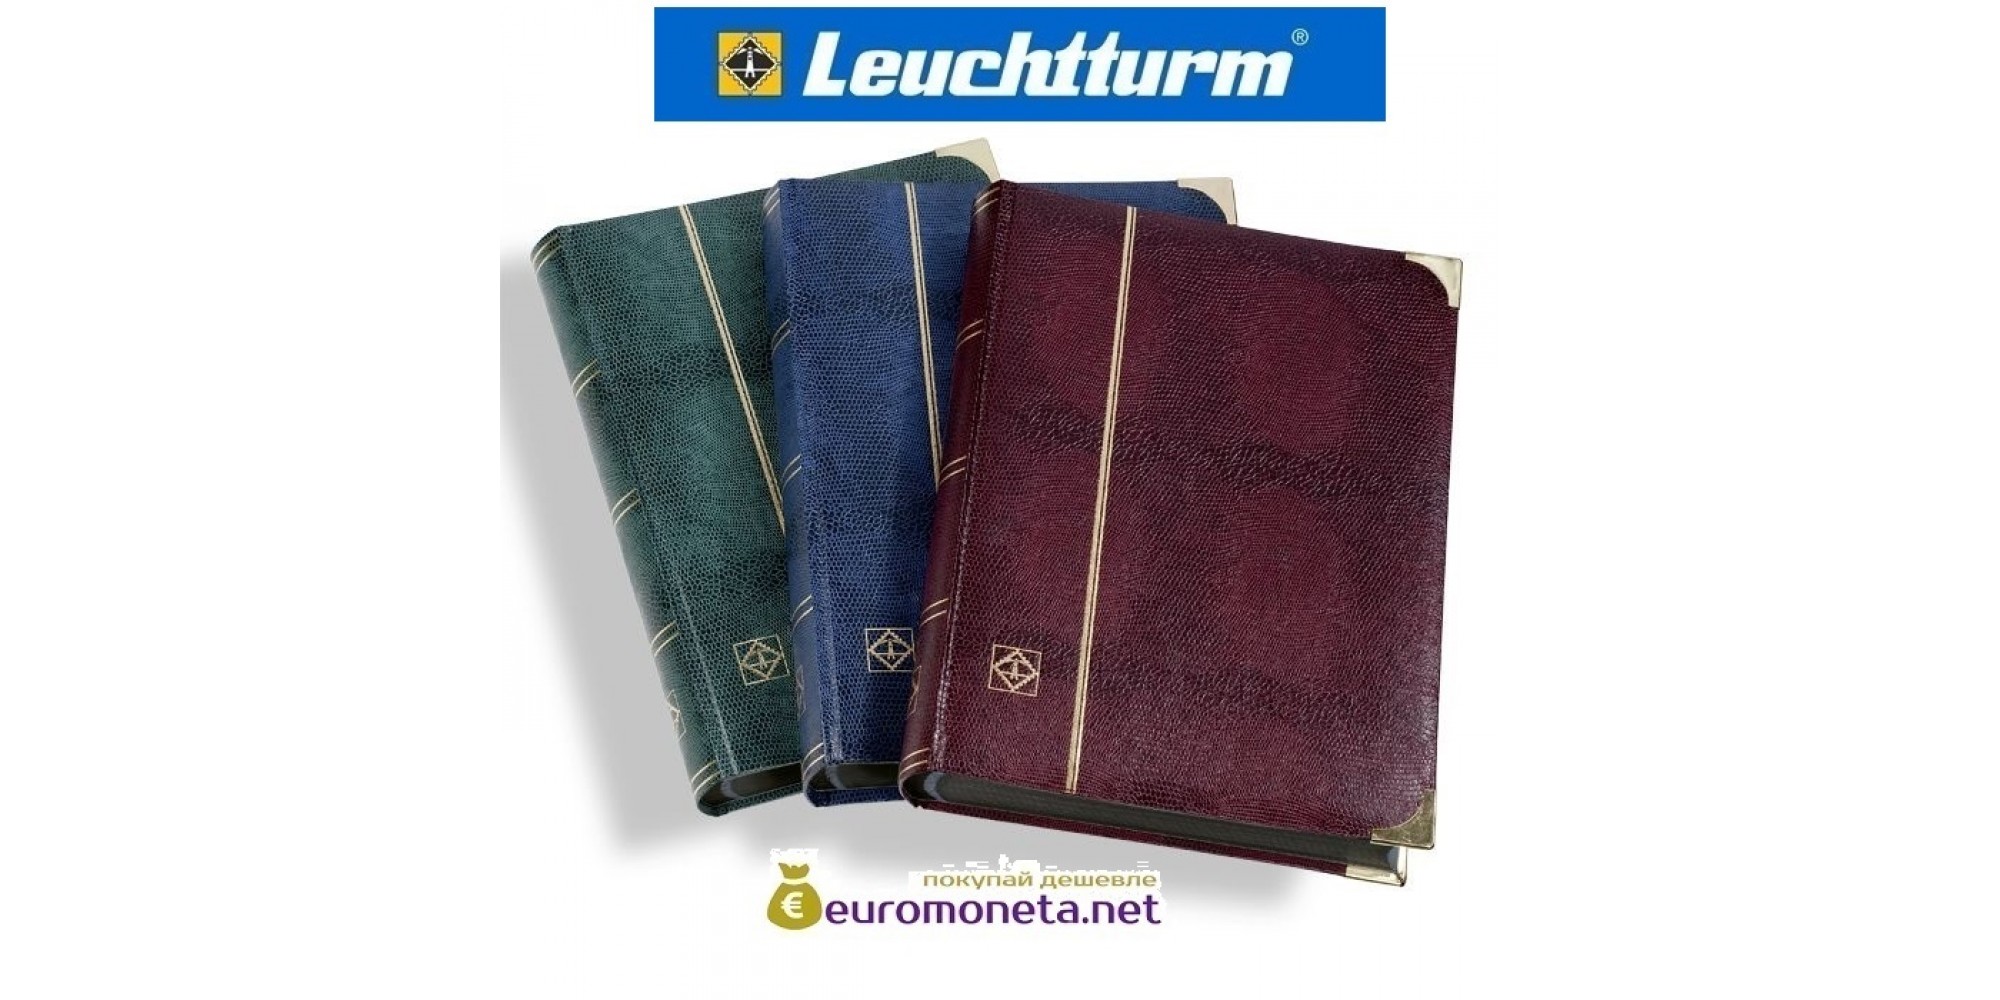 Leuchtturm альбом COMFORT DELUXE DIN A4 S64 чёрные страницы, обложка крокодил, металлические углы, синий